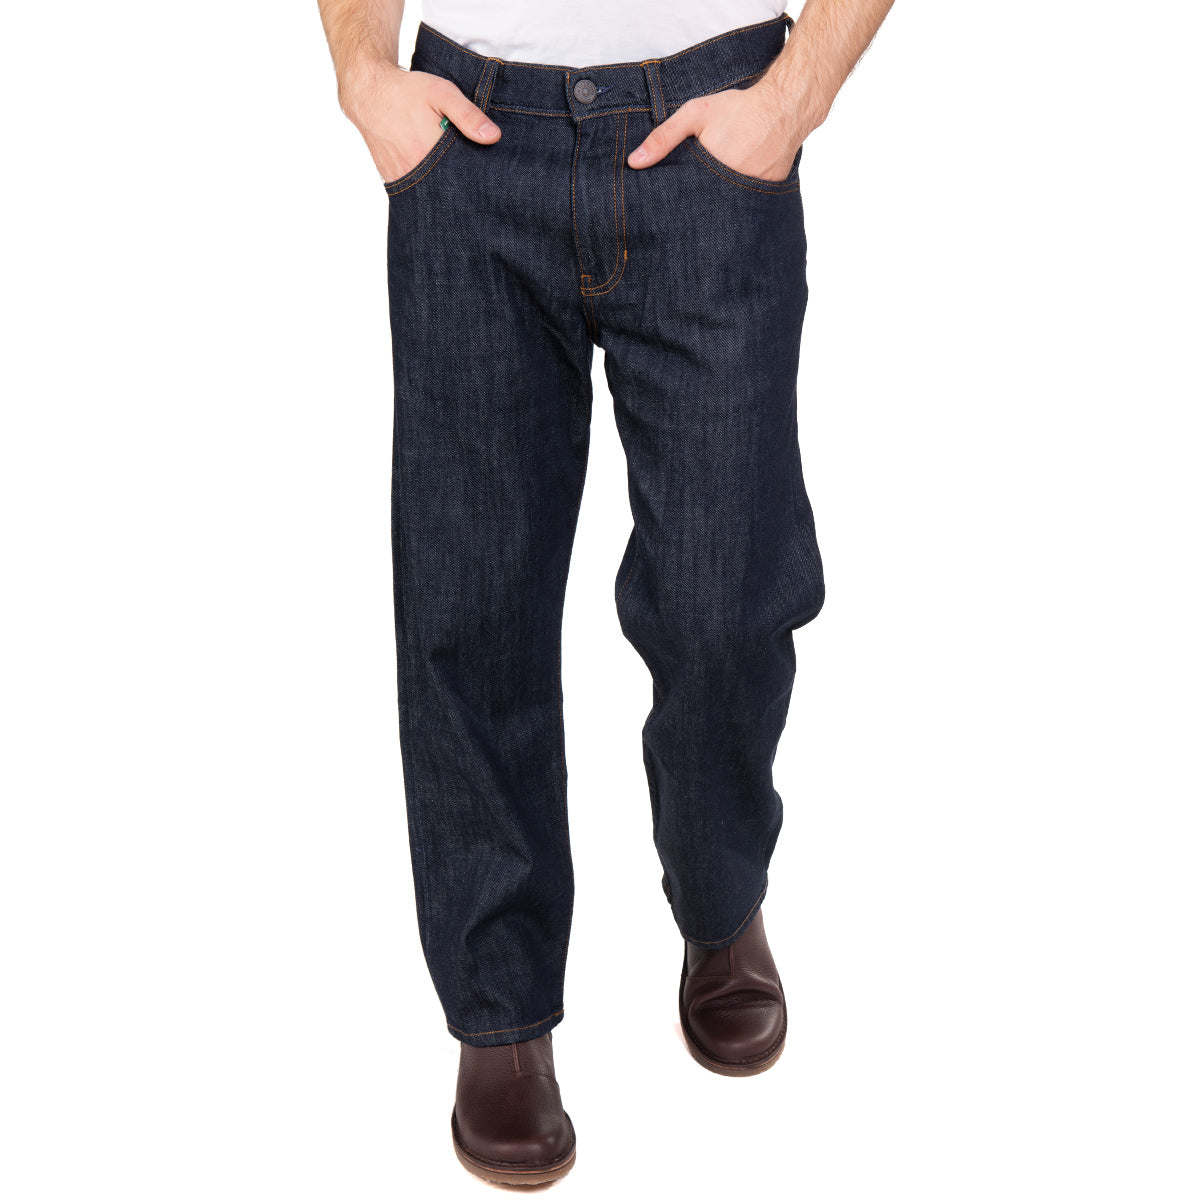 Nachhaltige Herren-Jeans von fairjeans: Locker sitzende Jeans aus Bio-Baumwolle, weit geschnitten für optimalen Tragekomfort